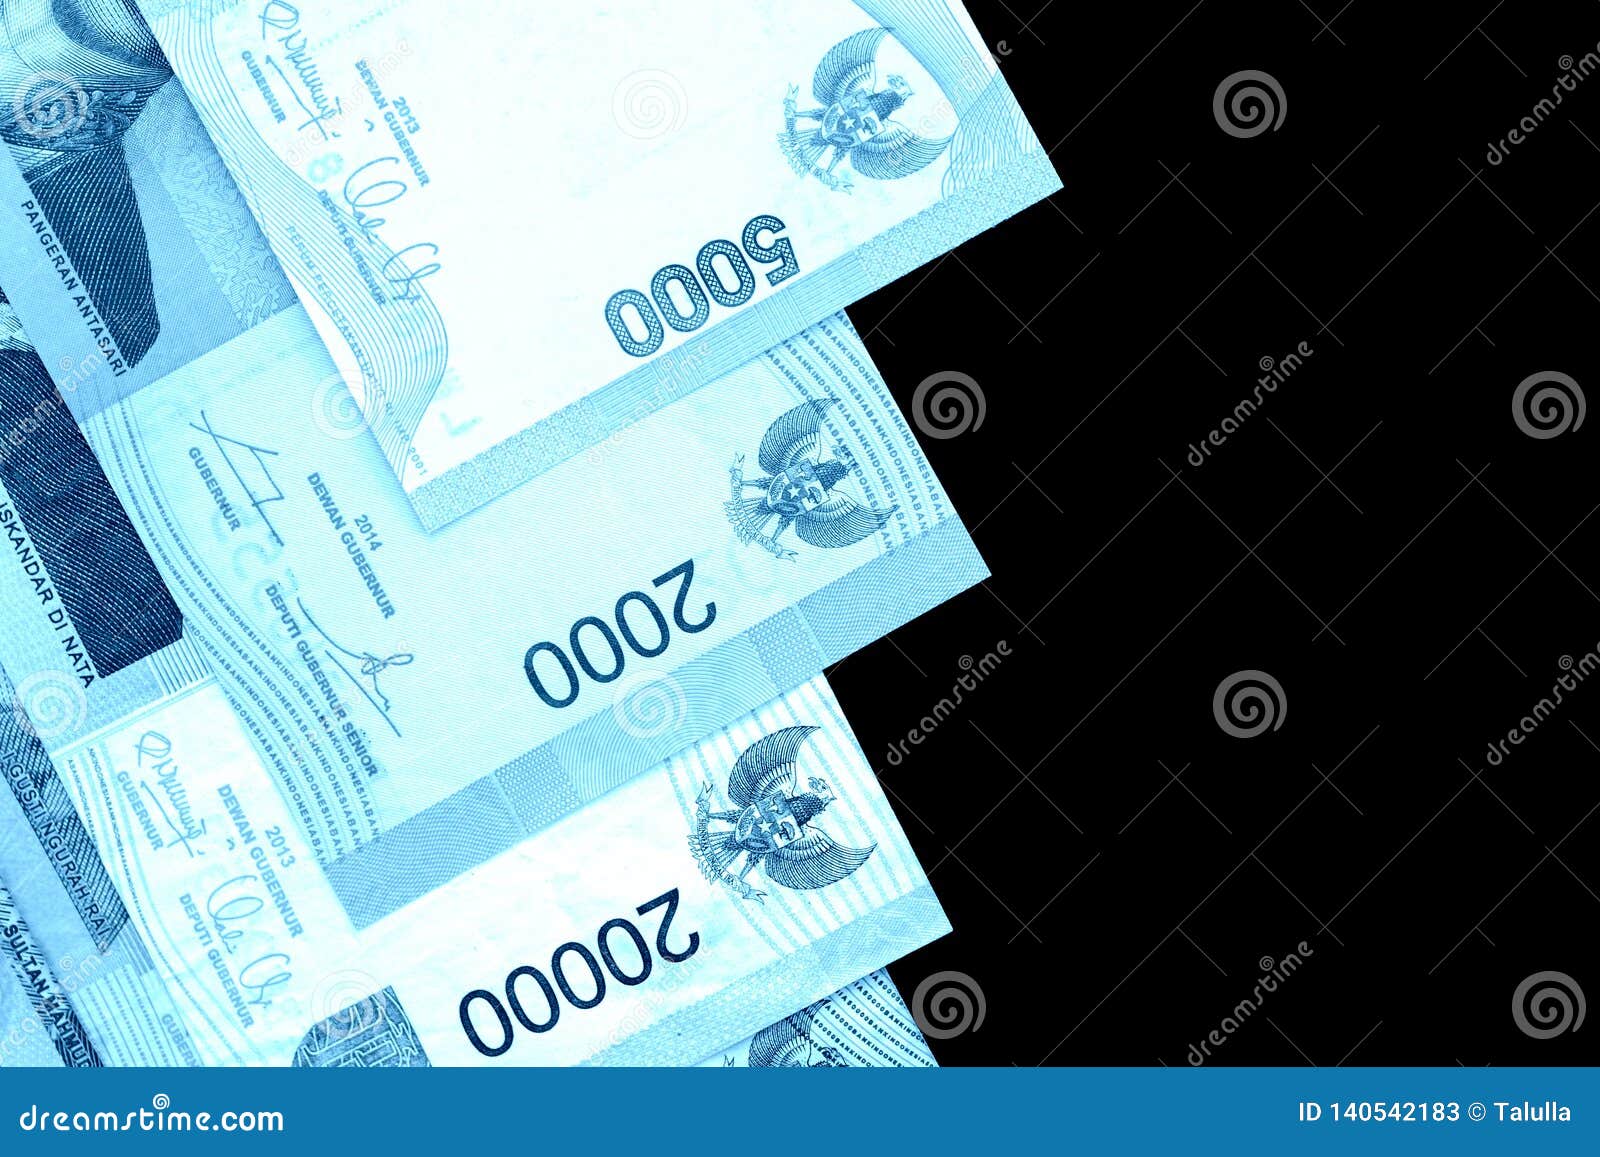 Синяя купюра. Синие банкноты. Банкноты синего цвета. Иностранная банкнота синяя. Бумажные банкноты синего цвета.